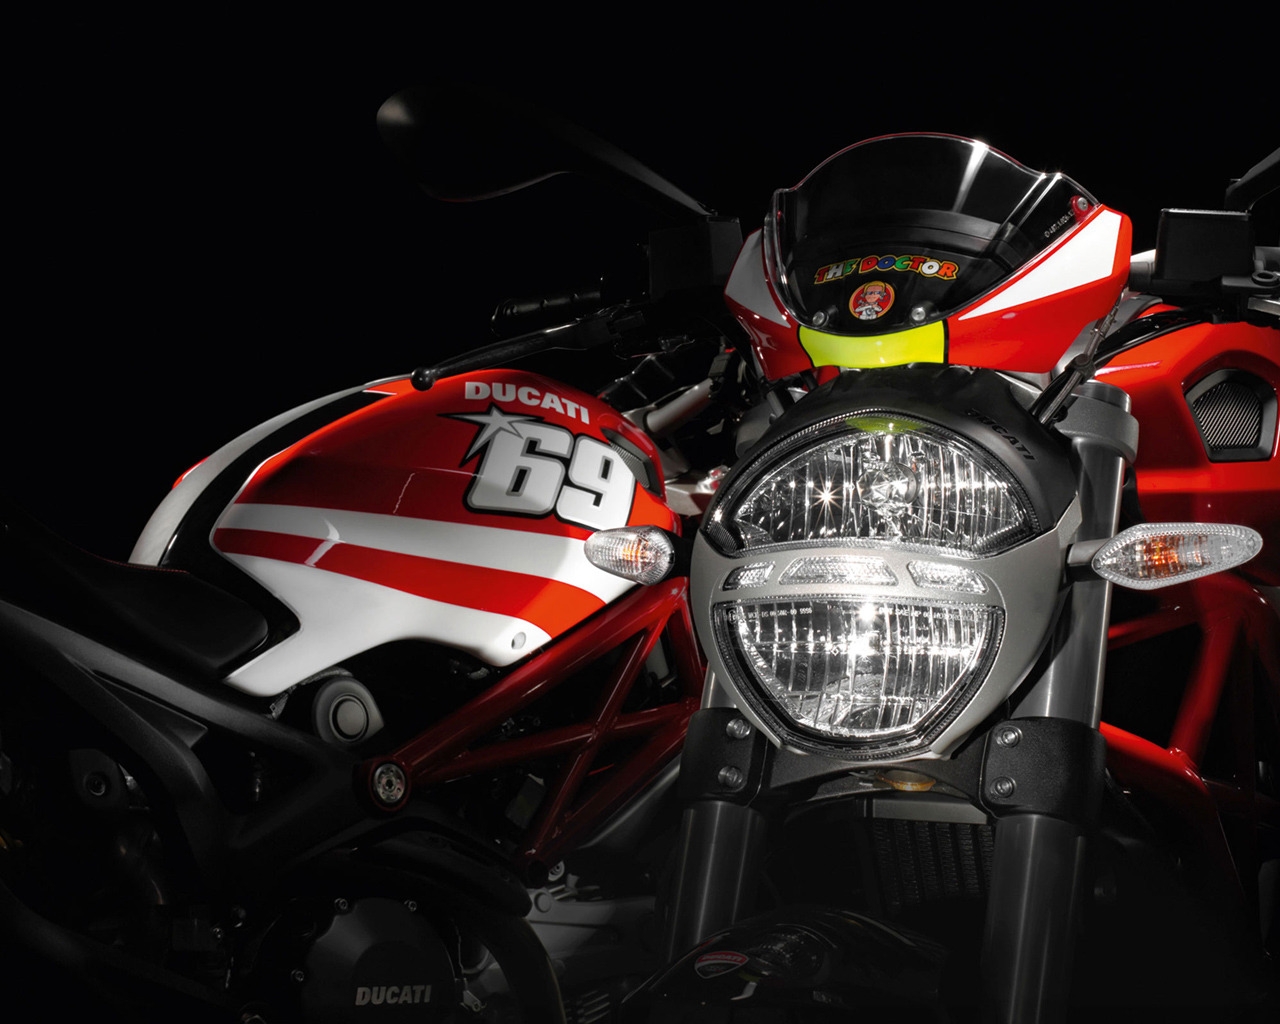 Ducati Rossi and Hayden Replica Ducati for 1280 x 1024 resolution